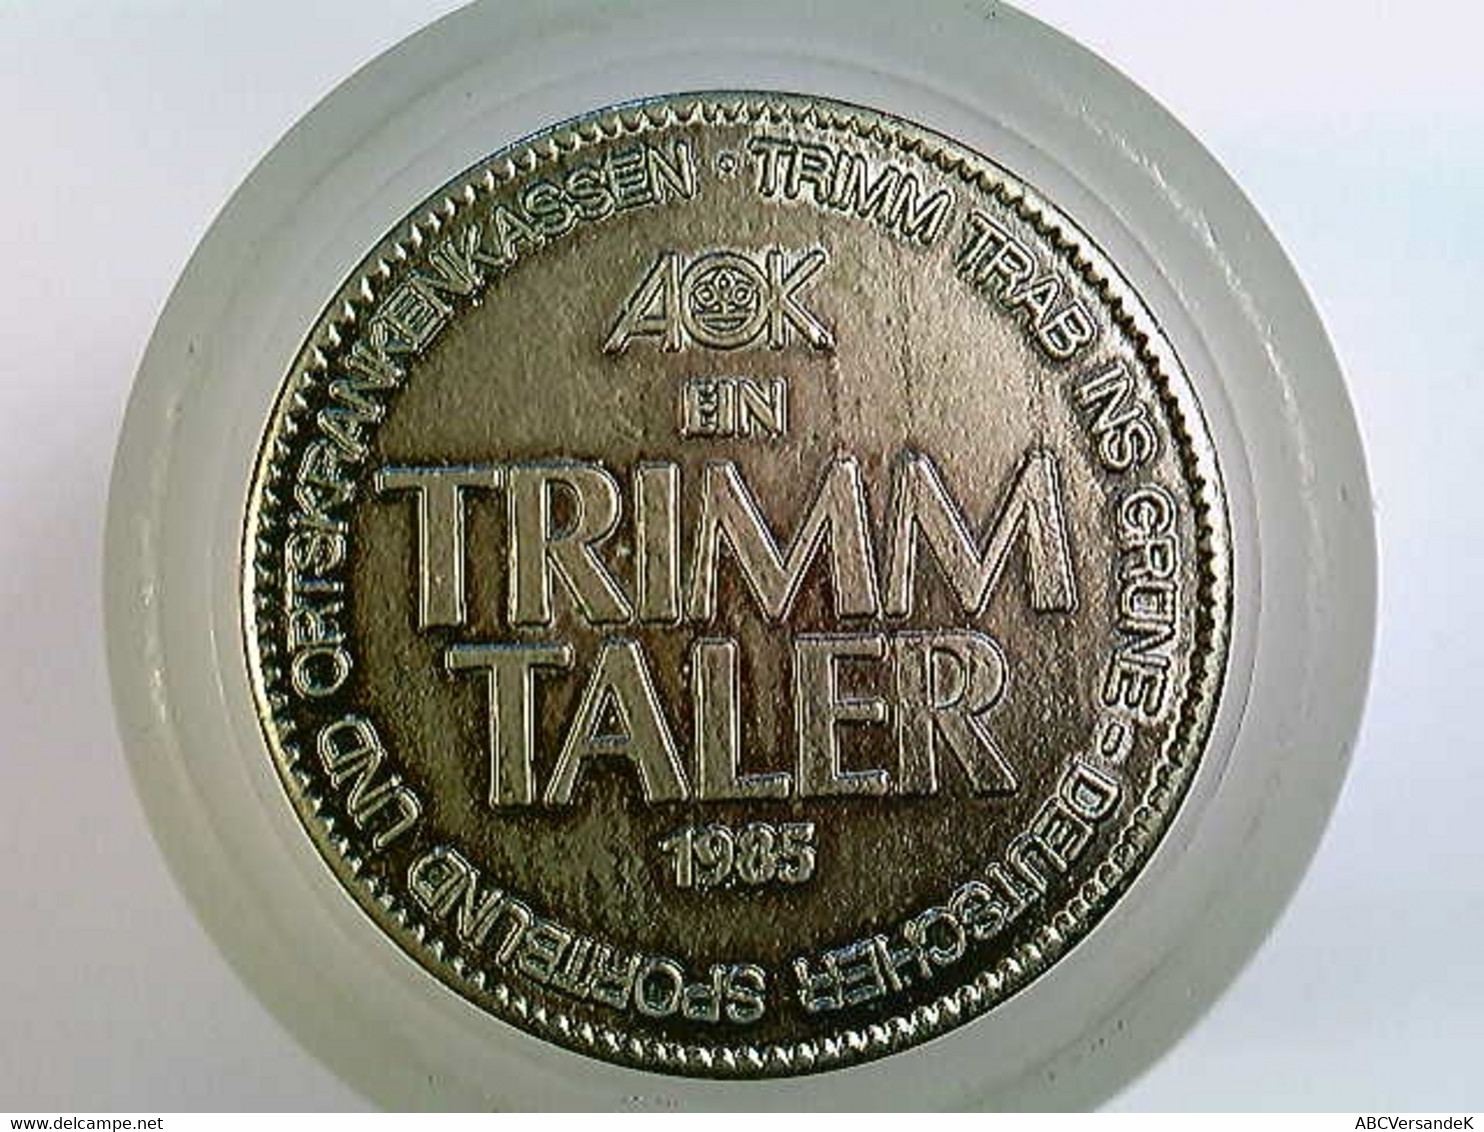 Medaille Solingen, Trimm Taler 1985 - Numismatik